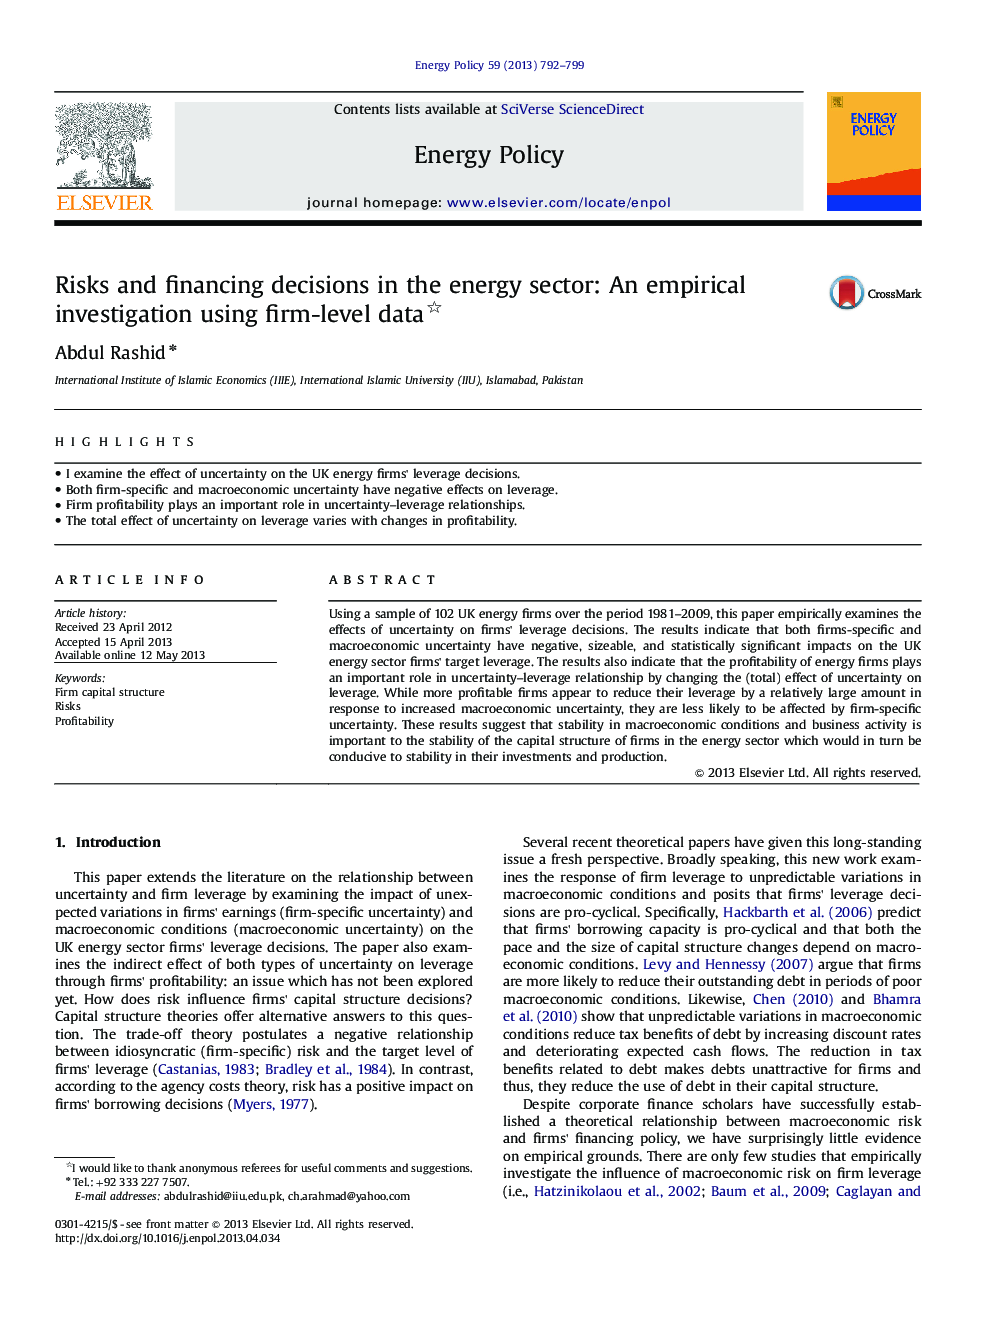 ریسک ها و تصمیمات تامین مالی در بخش انرژی: تحقیق تجربی با استفاده از داده های سطح شرکت 